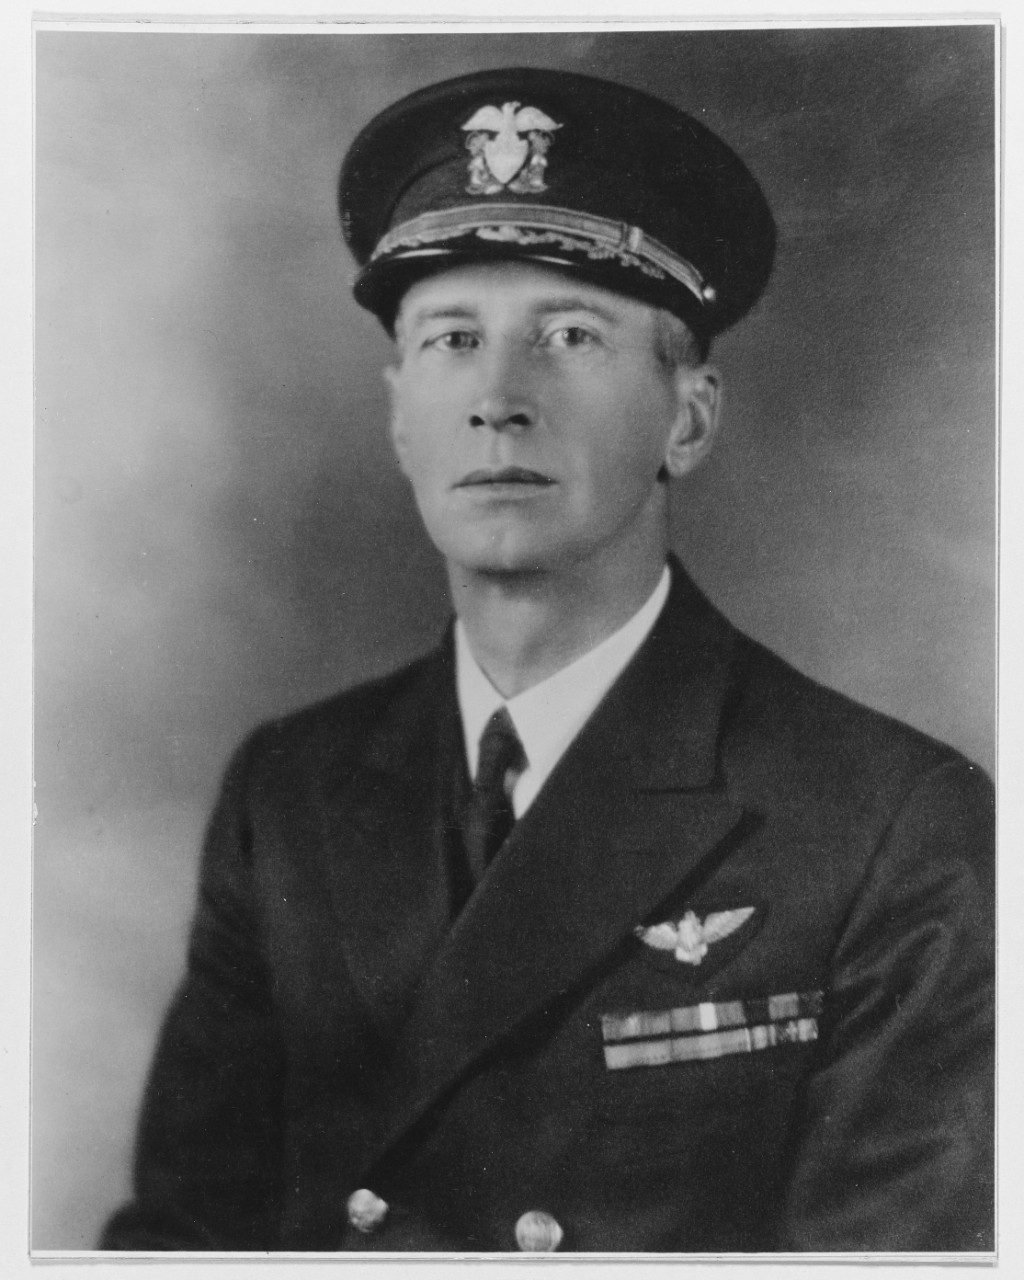 Captain Ernest J. King, USN